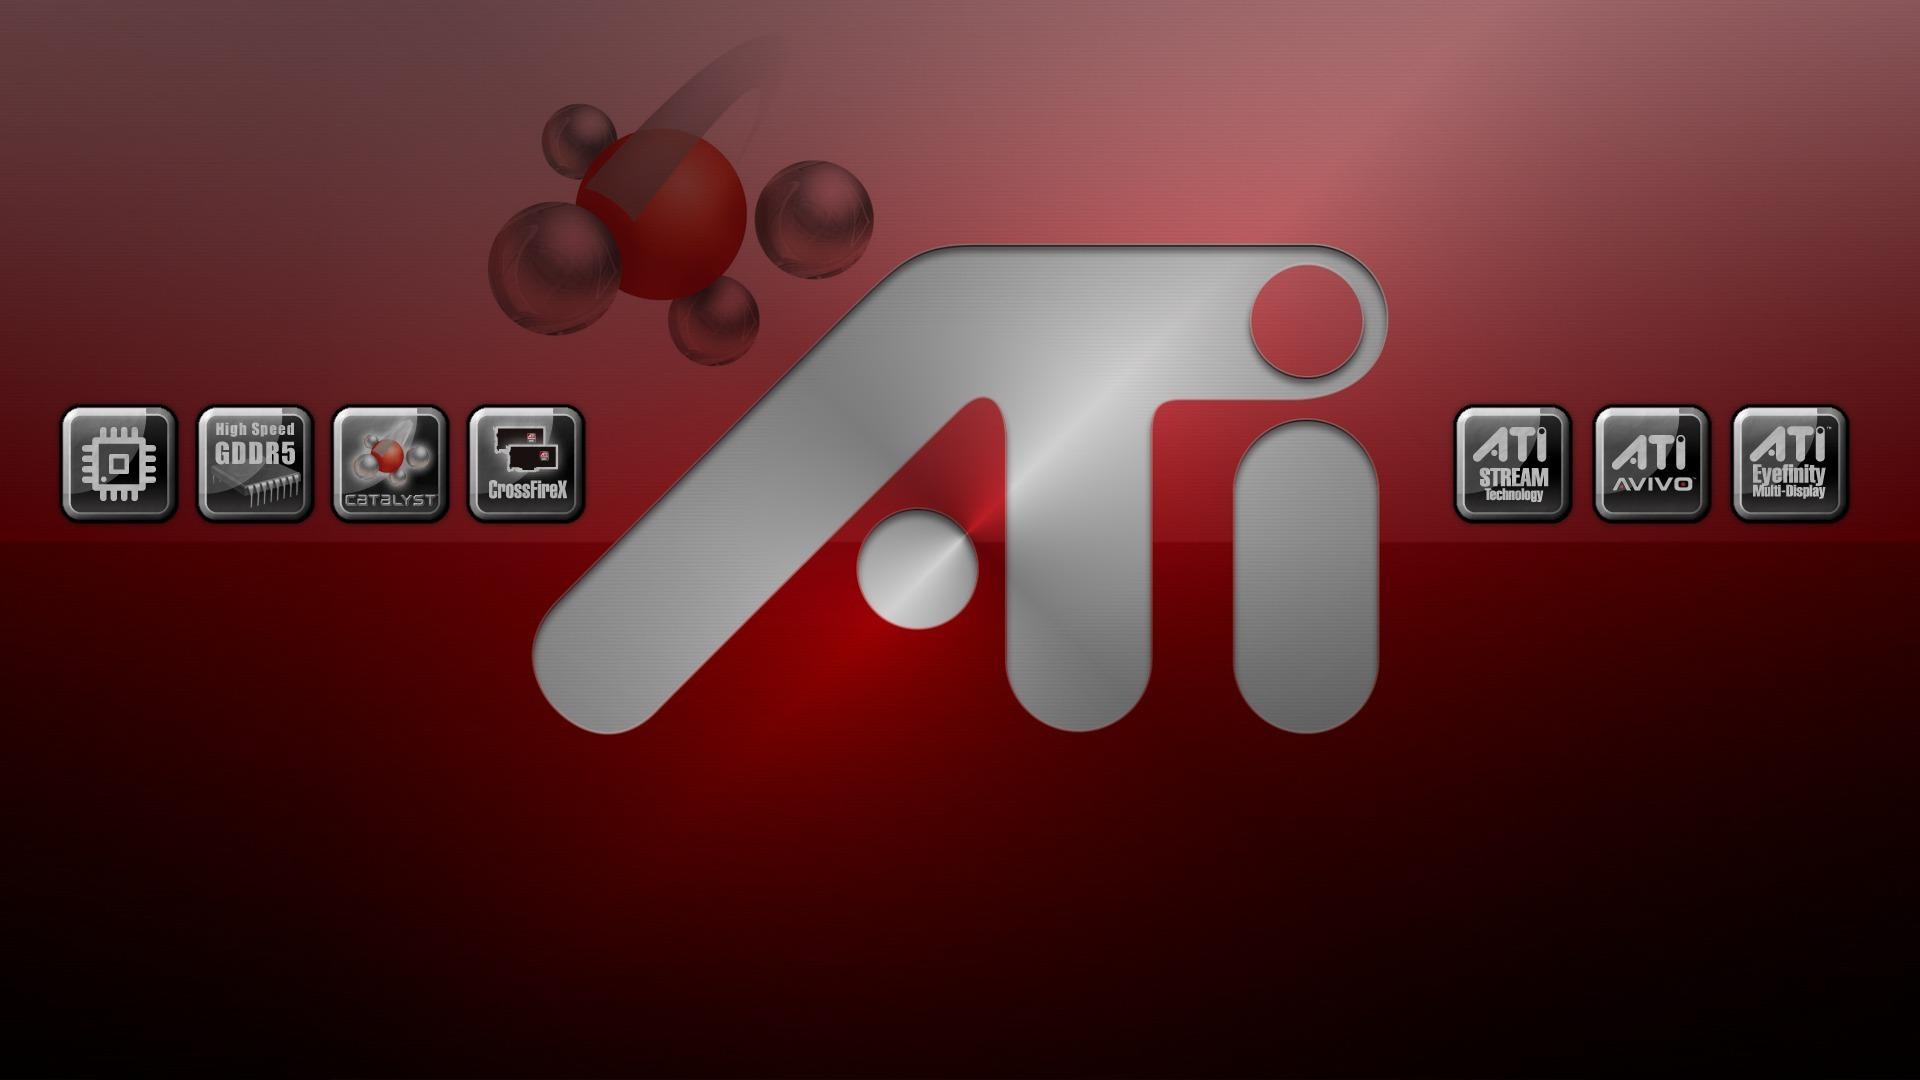 Ati HD Desktop Wallpaper Widescreen High Definition Fullscreen